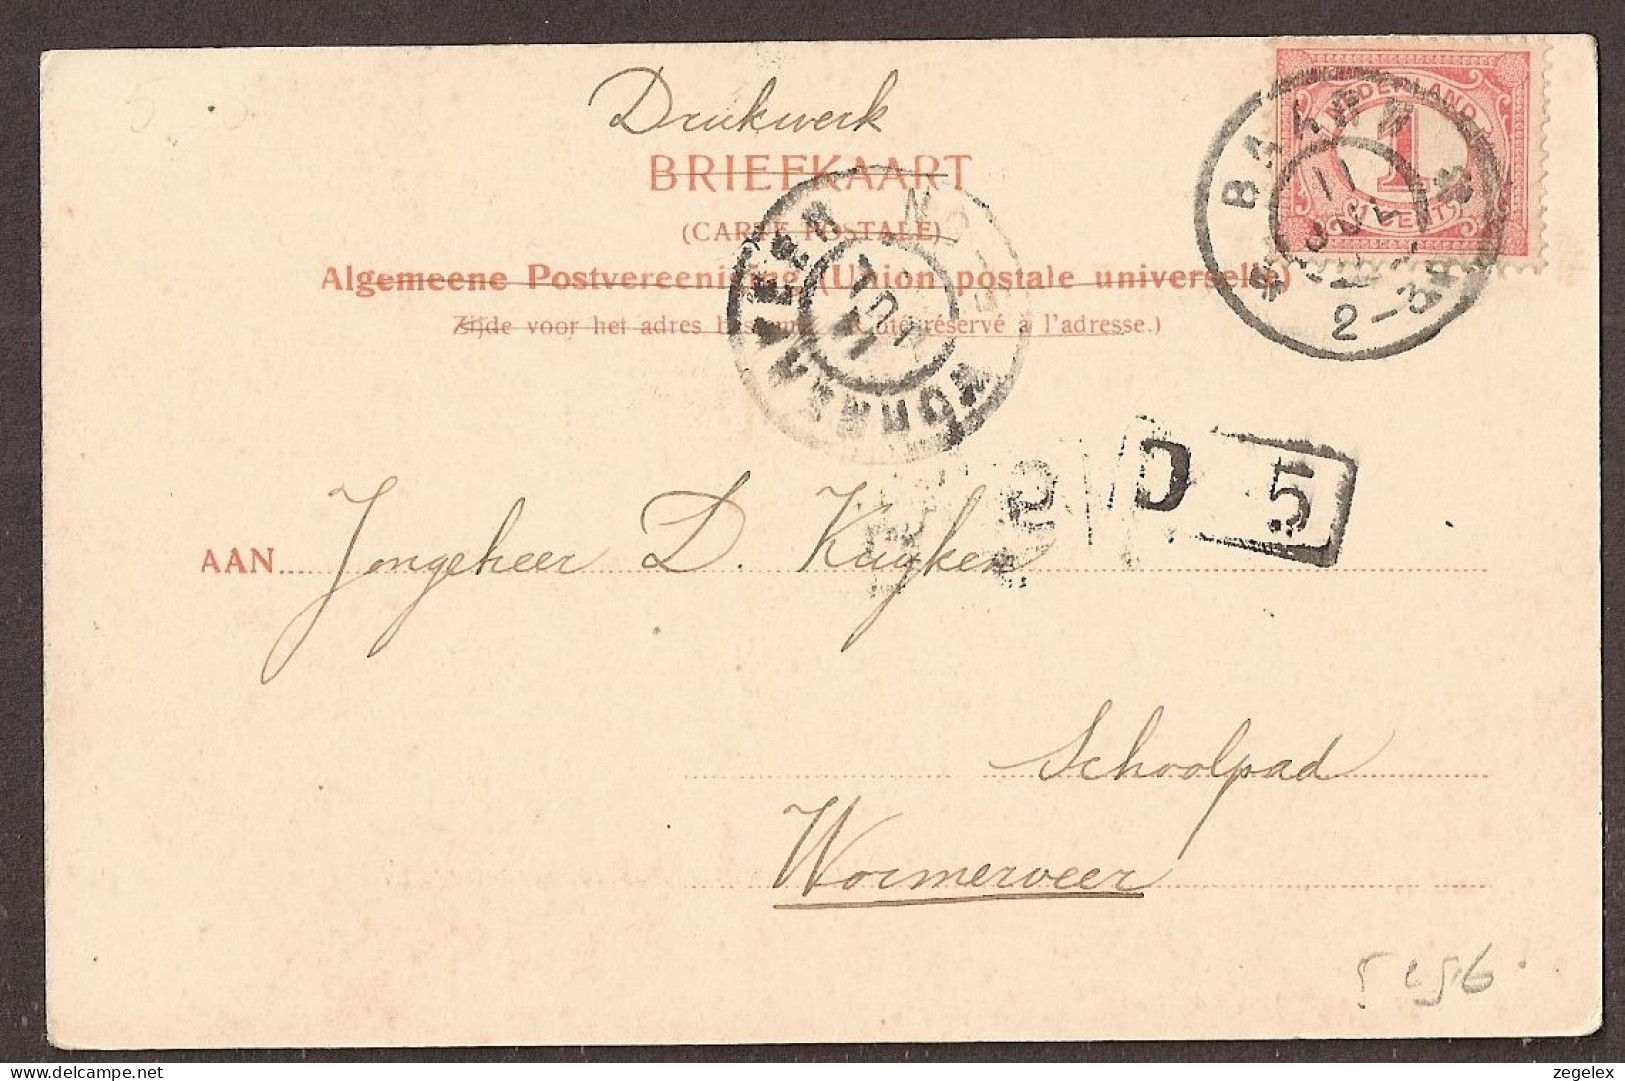 Baarn - Vijver Achter Kasteel Groeneveld - Gelopen Rond 1905 - Baarn